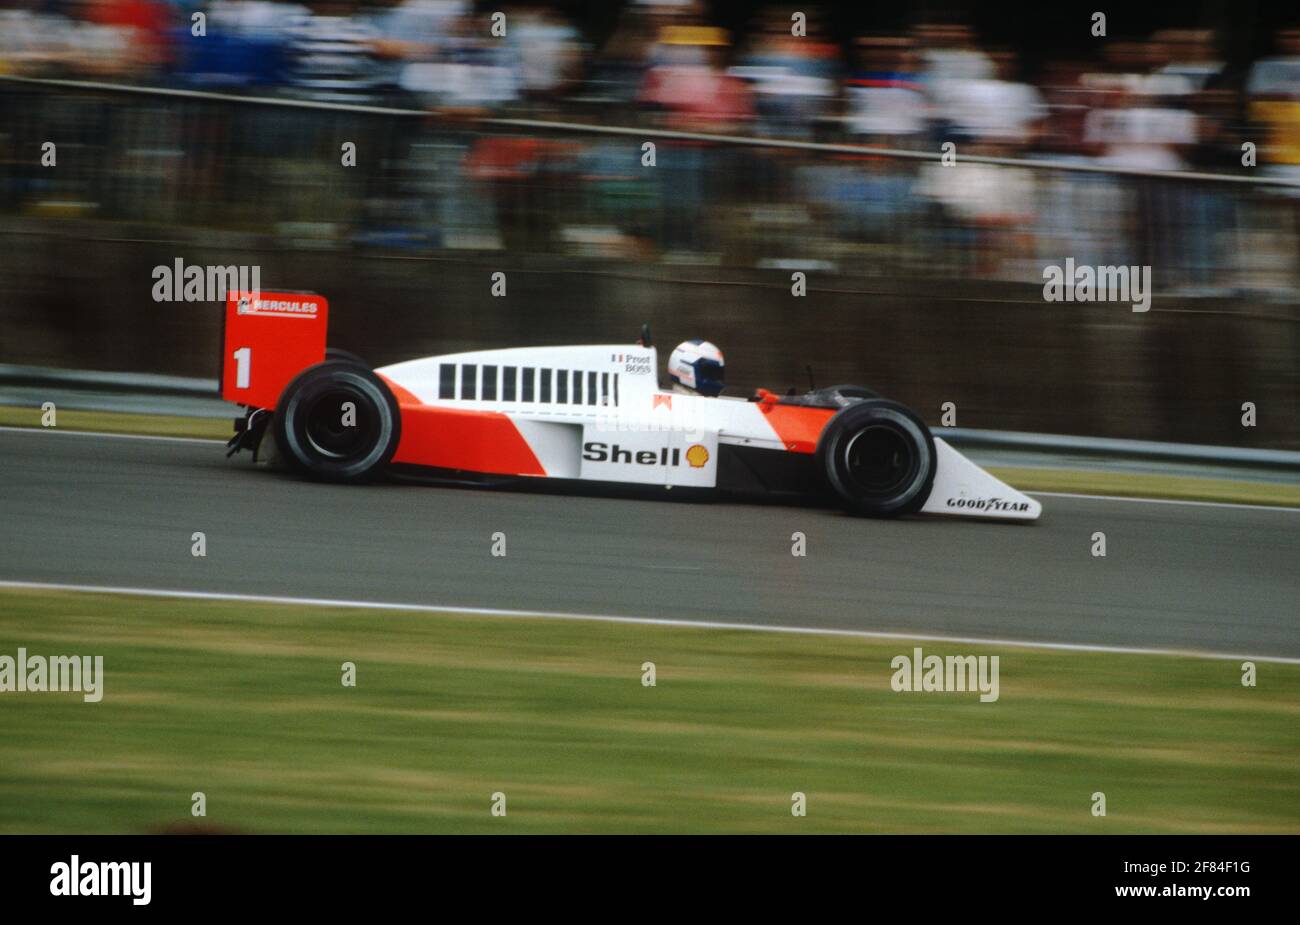 Alain Prost im McLaren MP4-3 während des Qualifyings für den Grand Prix von Großbritannien 1987 in Silverstone. Stockfoto